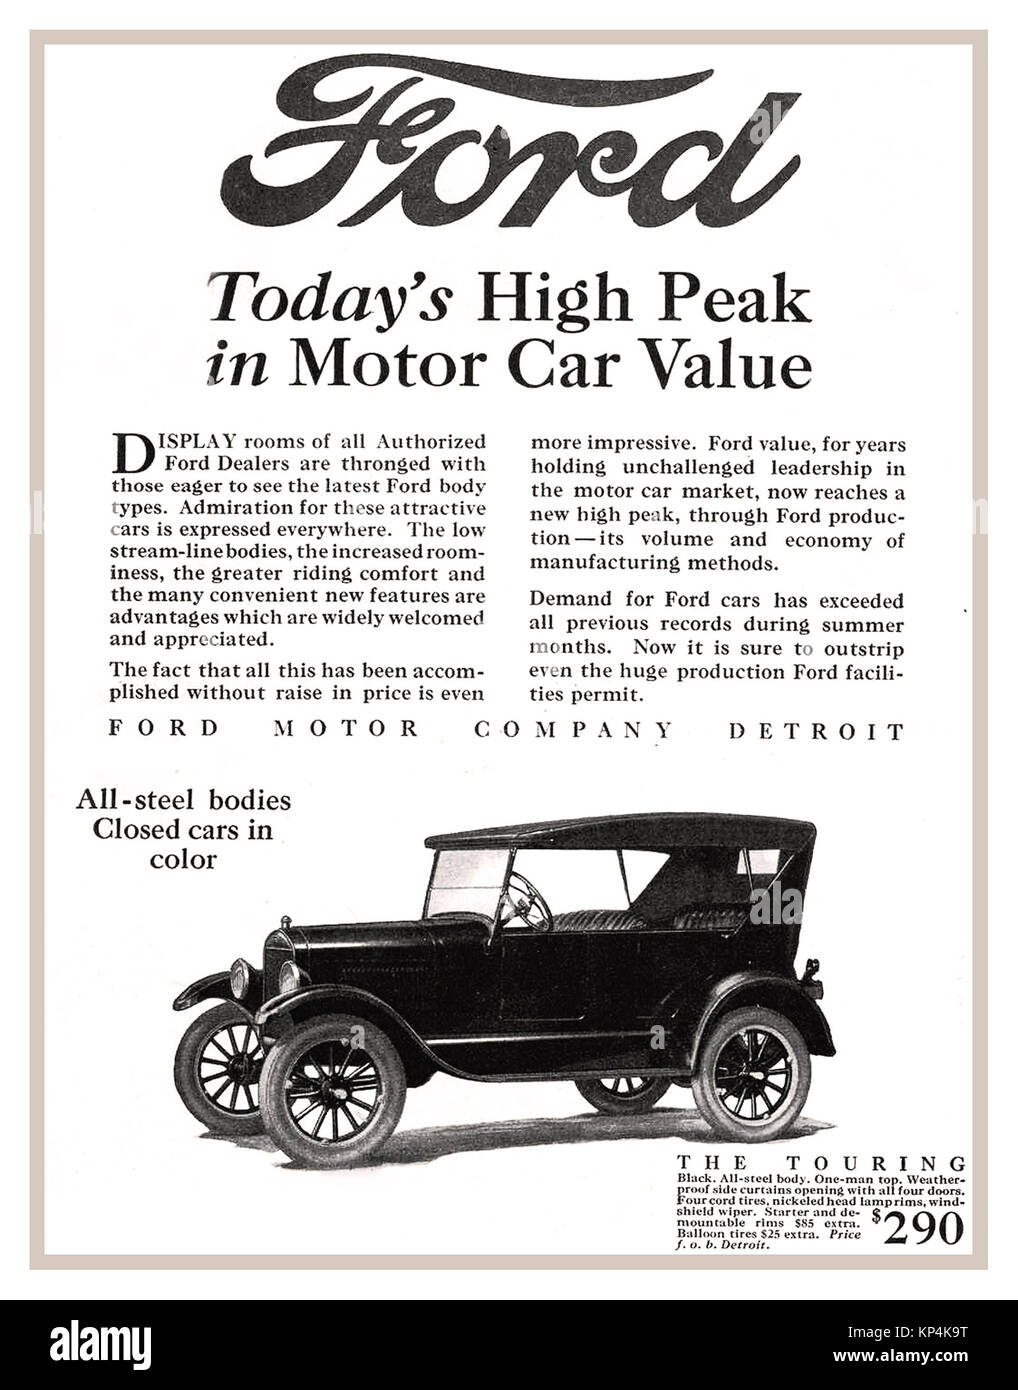 vintage-1900s-advertisement-for-1926-ford-model-t-motorcar-detroit-KP4K9T.jpg